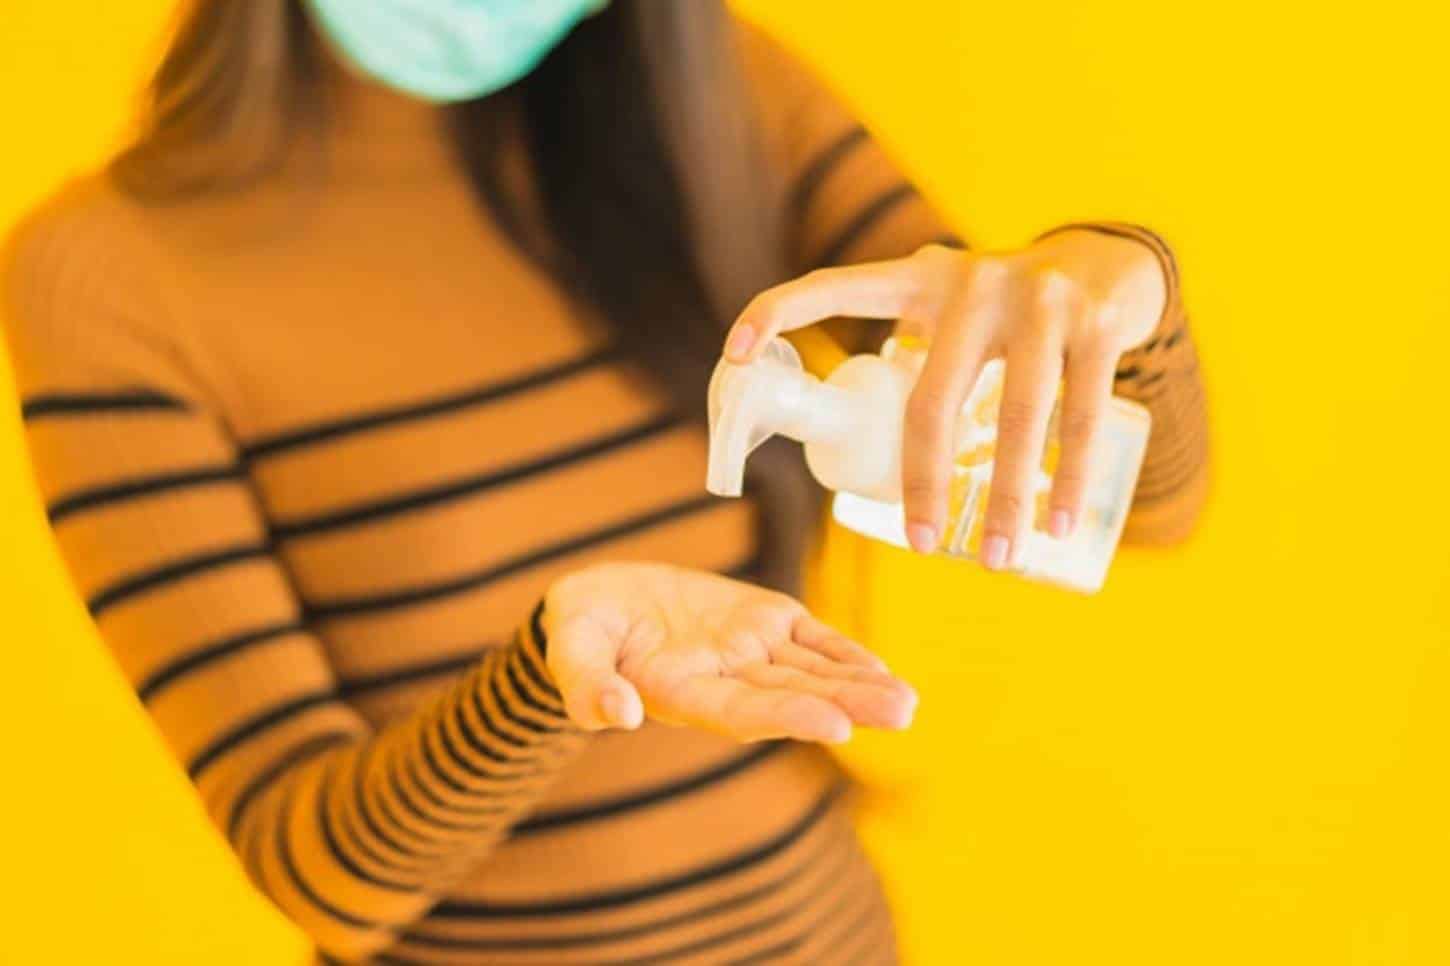 Hidrate naturalmente as mãos contra o ressecamento do álcool em gel